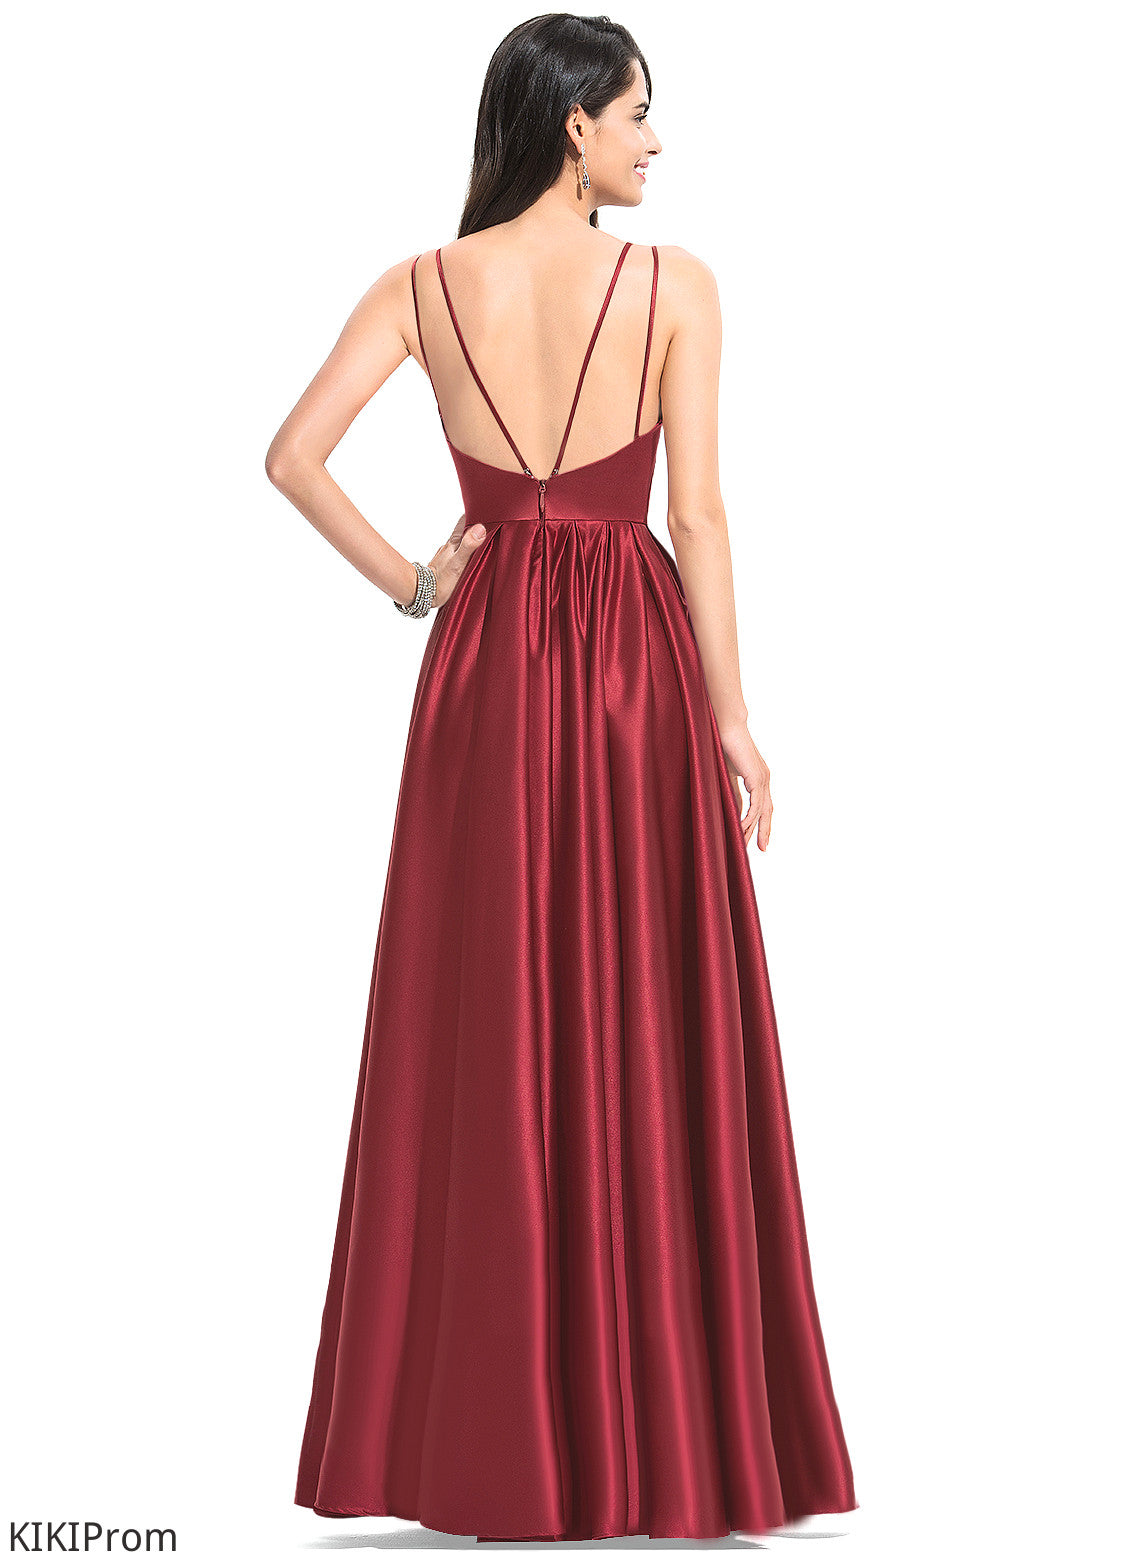 Fabric Embellishment Neckline Silhouette A-Line Length Floor-Length Pleated V-neck Pam A-Line/Princess Halter Bridesmaid Dresses